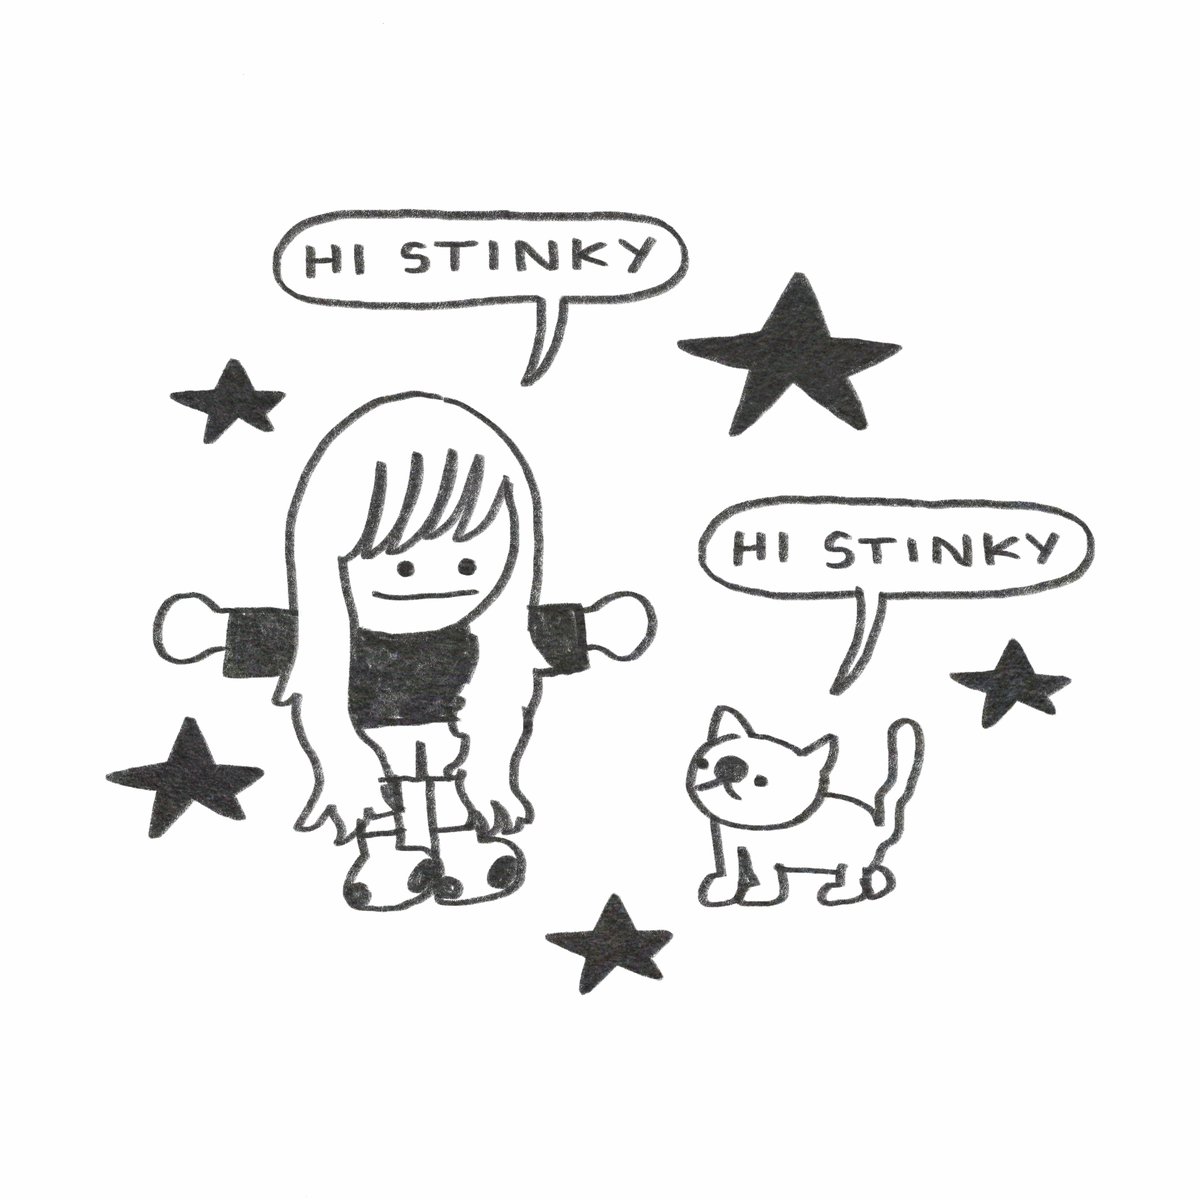 Hi stinky :-)